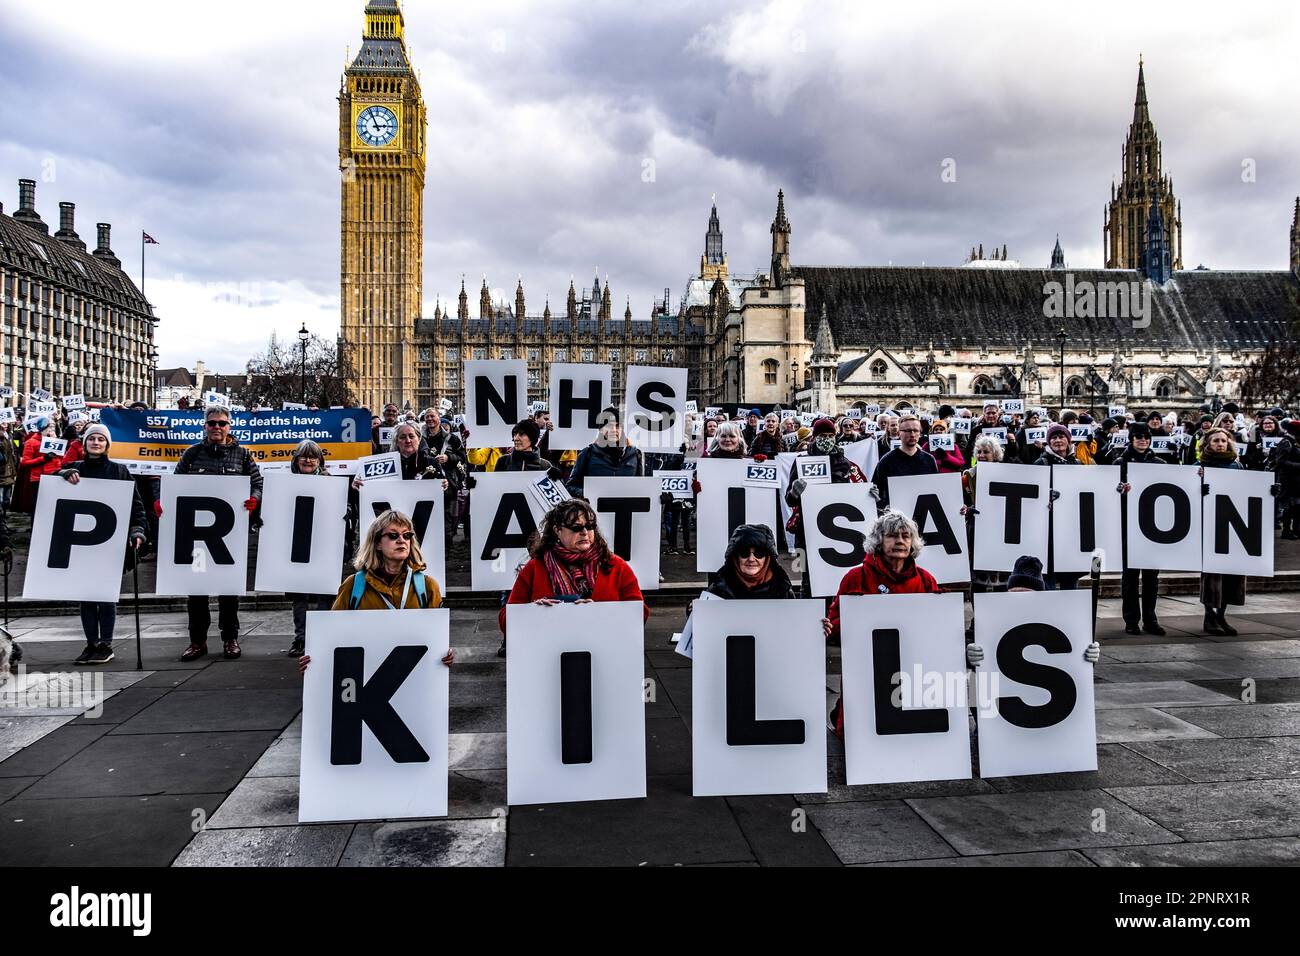 NHS National Health Service Anti-Privatisierungs-Protest am Trafalgar Square am 25. Februar 2023. Organisiert von We Own IT nach einer aktuellen Oxford University Studie, die die zunehmende Auslagerung von NHS-Dienstleistungen mit dem vermeidbaren Tod von 557 Menschen seit 2013 verbindet. Stockfoto